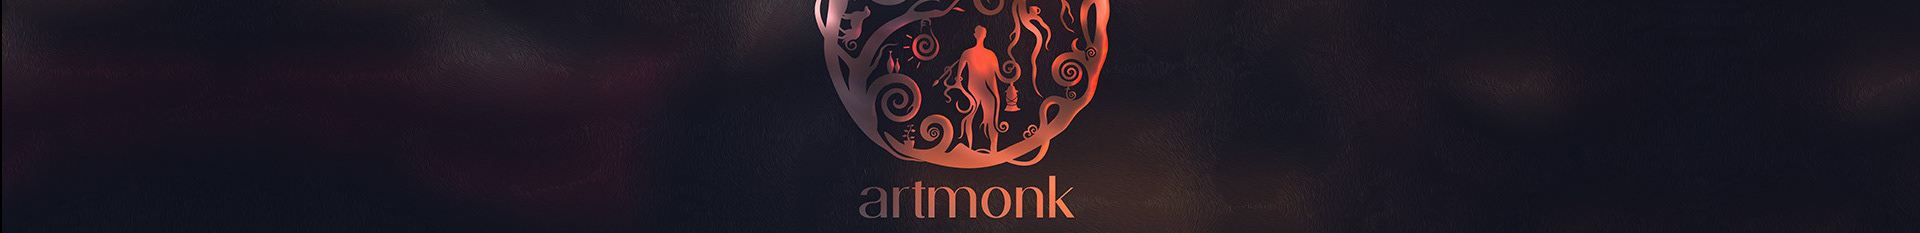 Artmonk Designs's profile banner